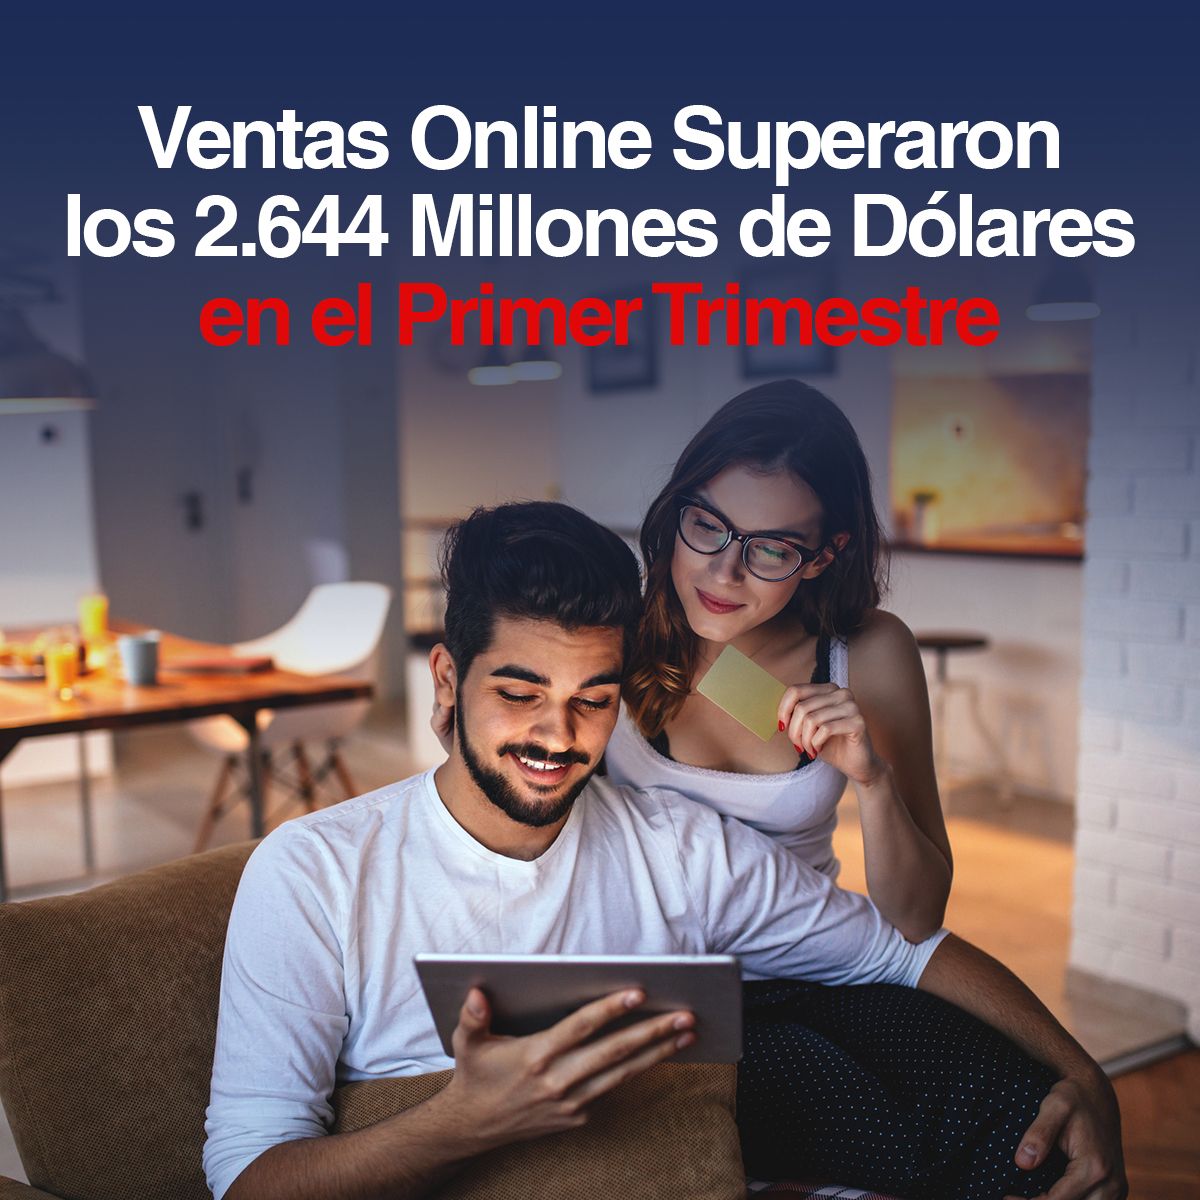 Ventas Online Superaron los 2.644 Millones de Dólares en el Primer Trimestre